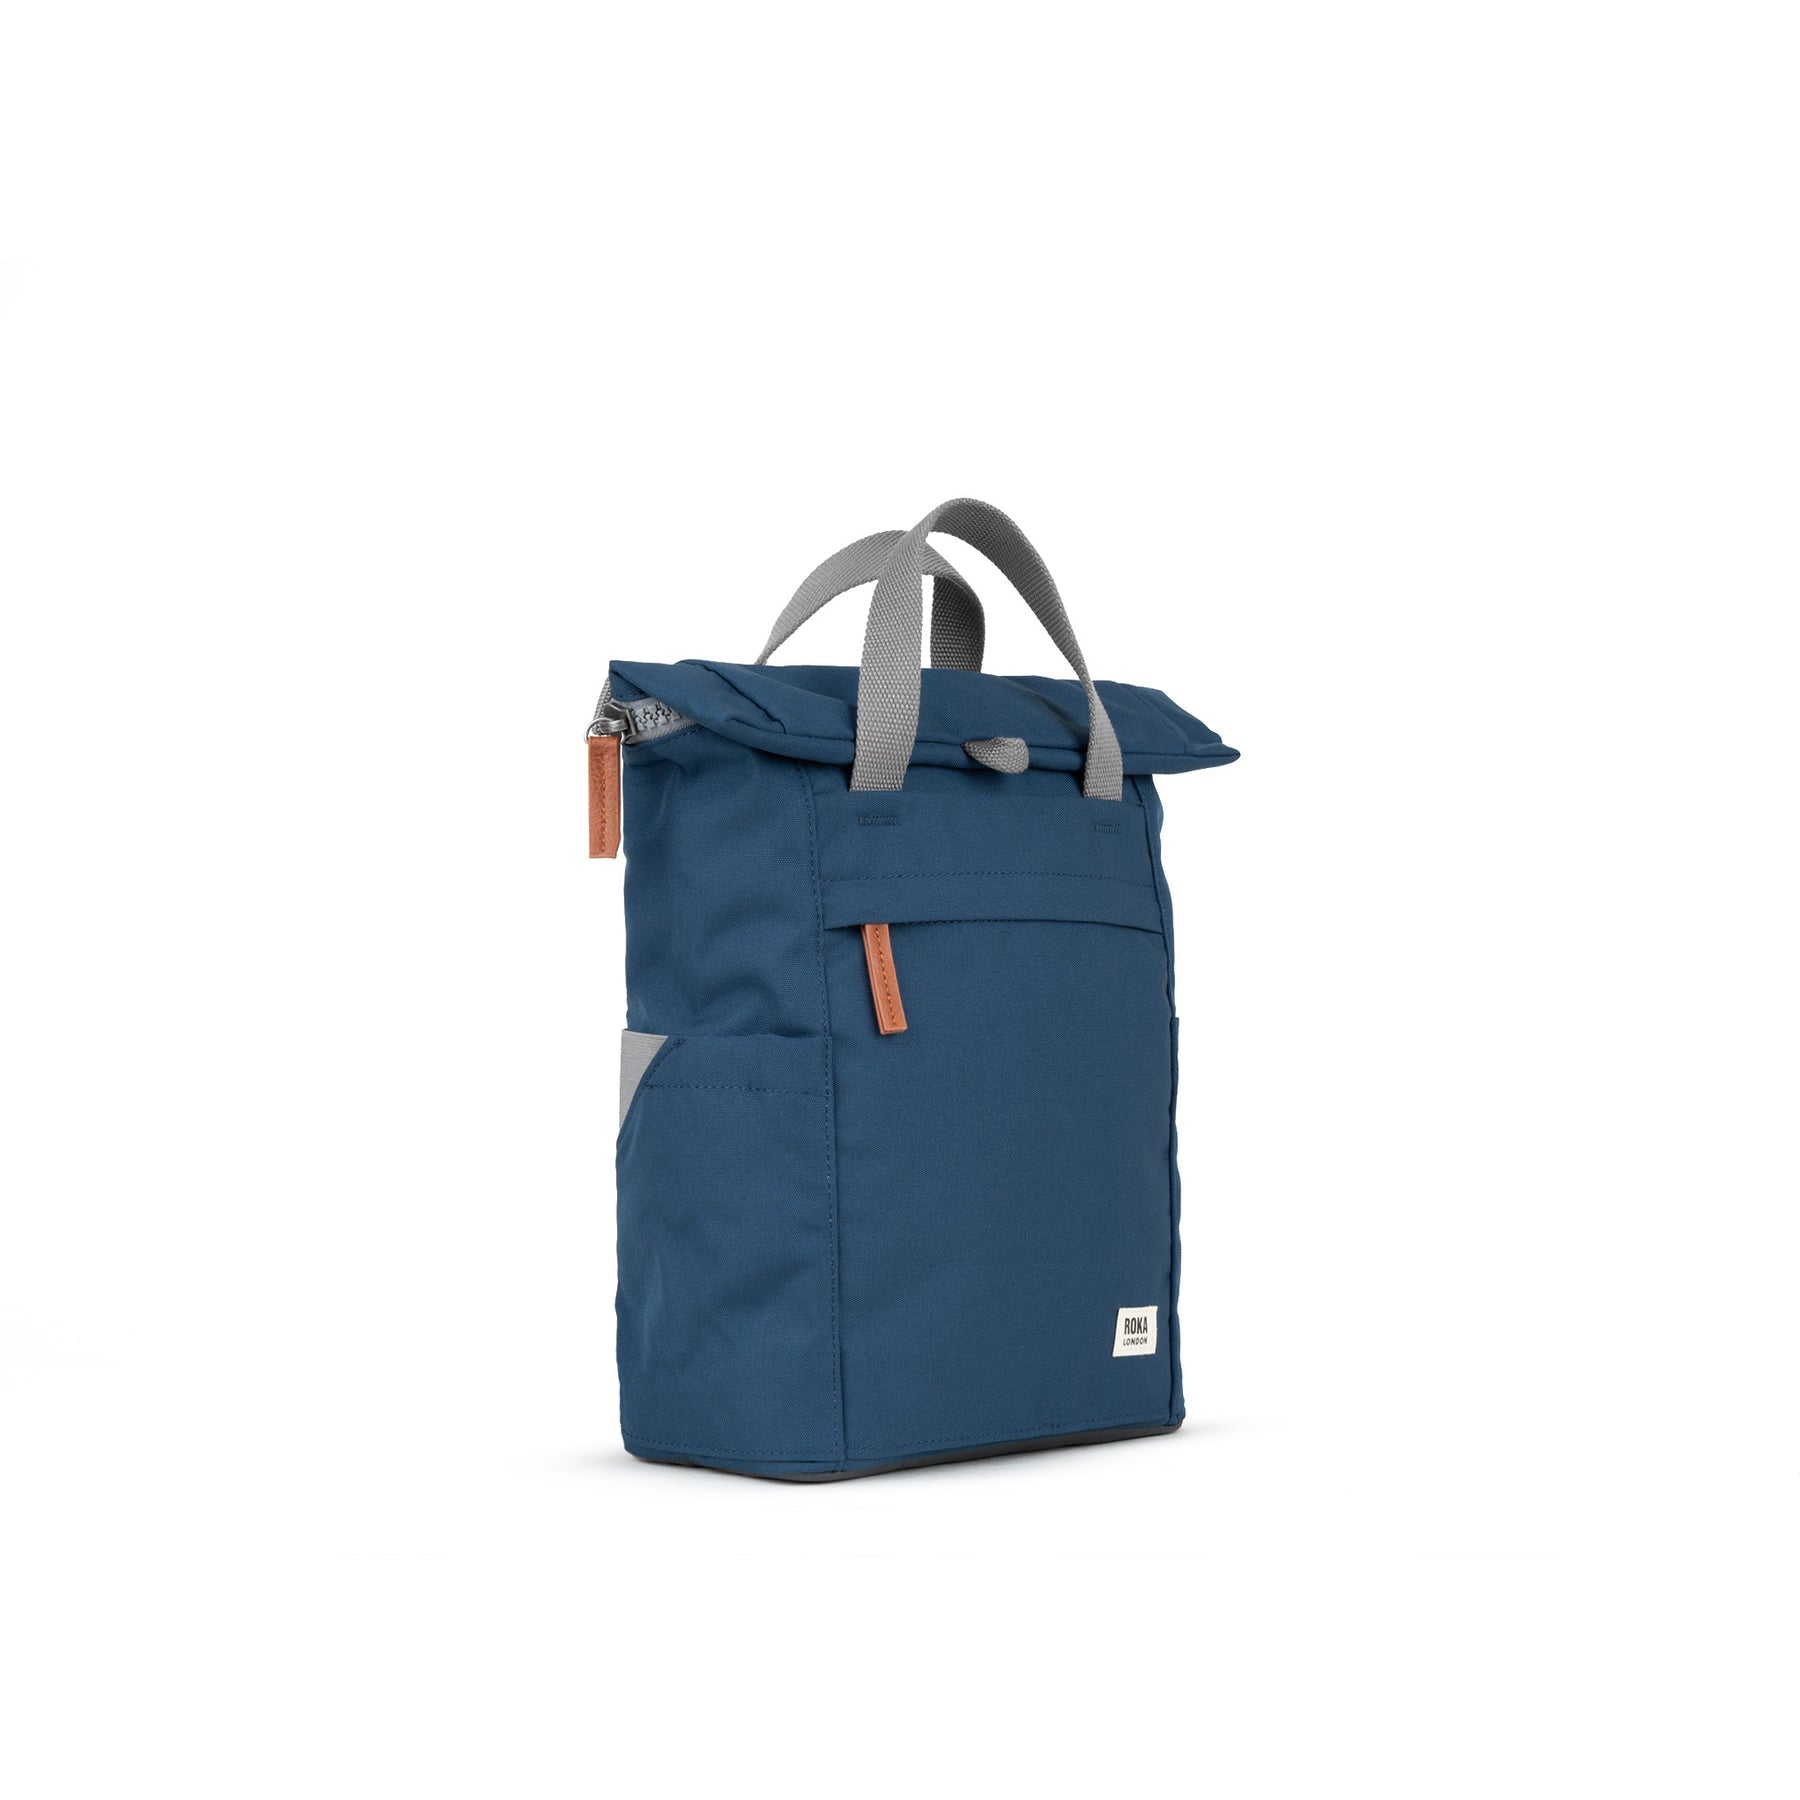 ROKA Finchley A Deep Blue Medium Recycled Canvas Bag